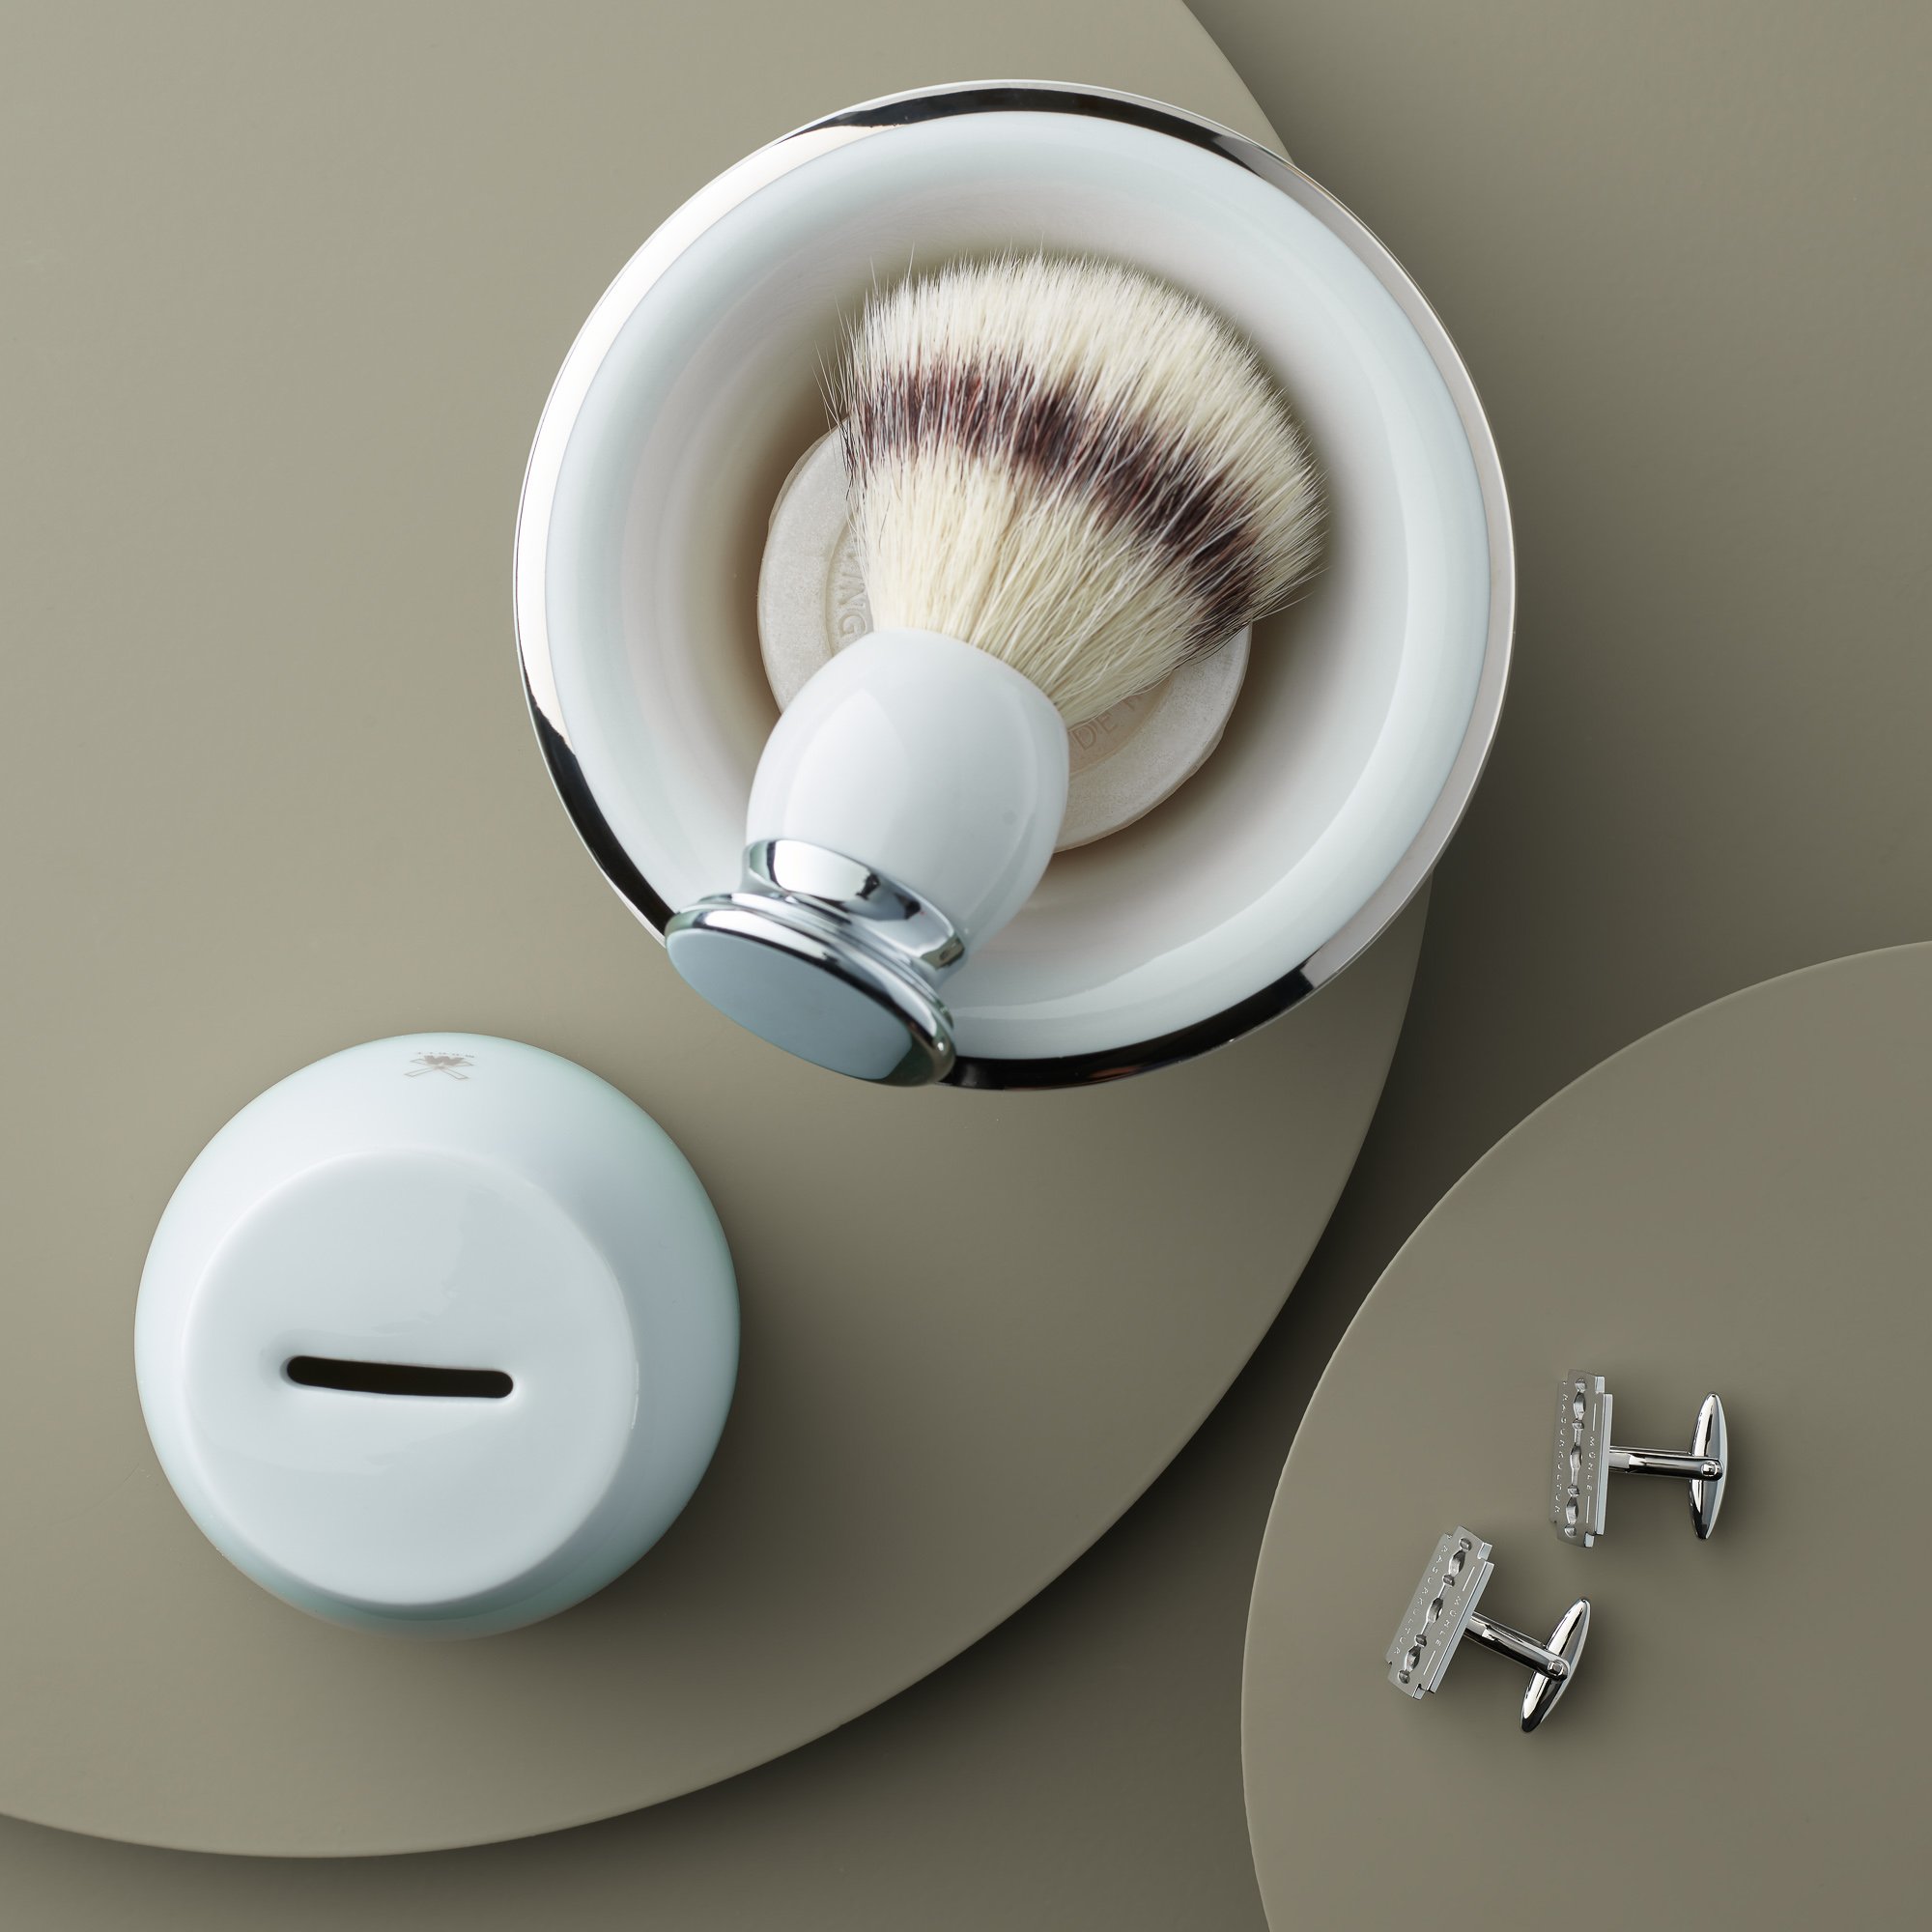 Ein Rasierpinsel in einer Schale mit Seife, eine weiße Rasierseifenschale mit Schlitz und zwei silberne Rasierklingenhalter auf einem grauen Hintergrund.